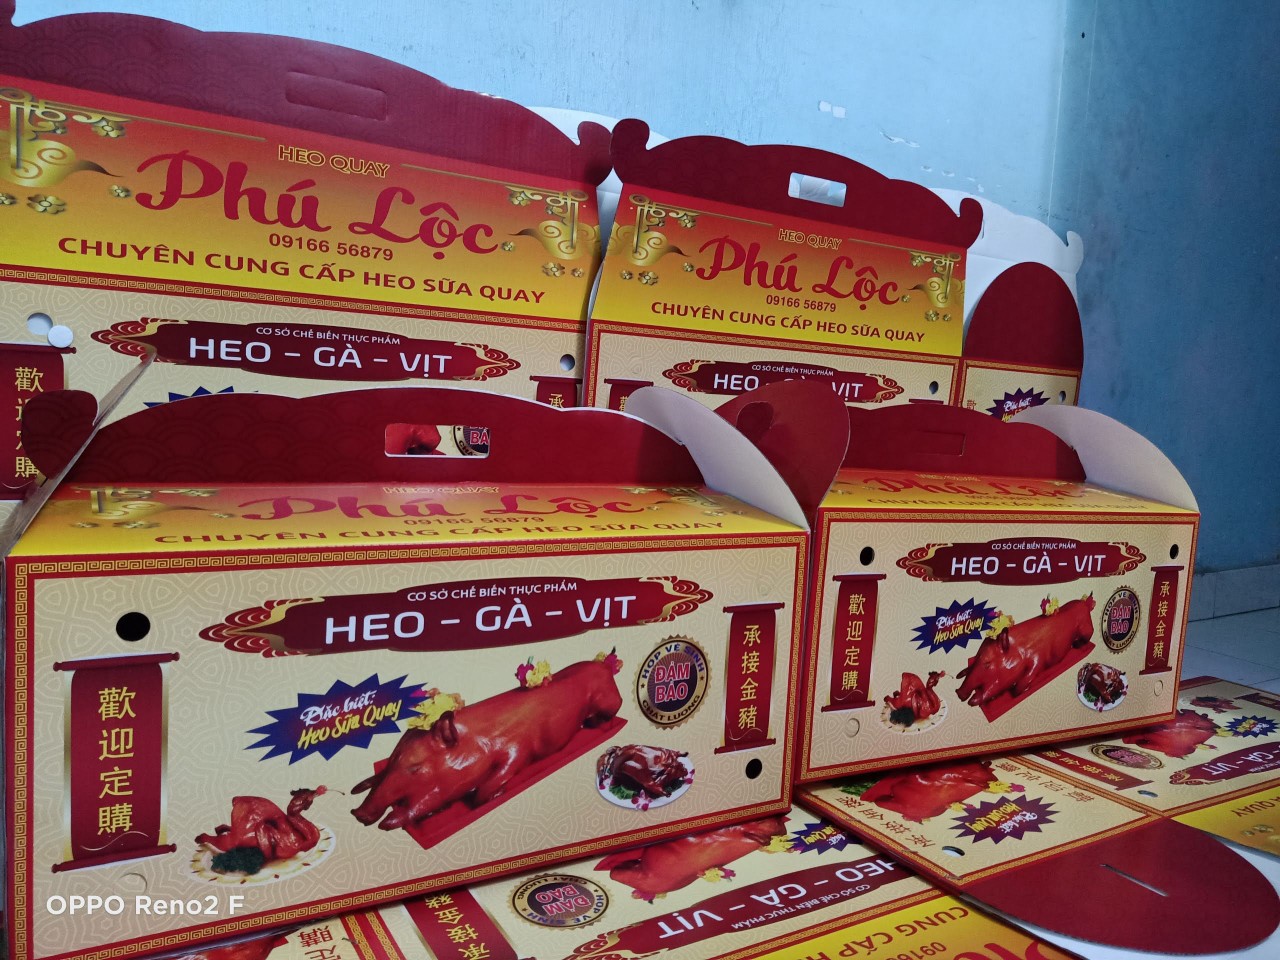 Quy cách hộp đóng gói đẹp và chuyên nghiệp tại Heo Quay Phú Lộc